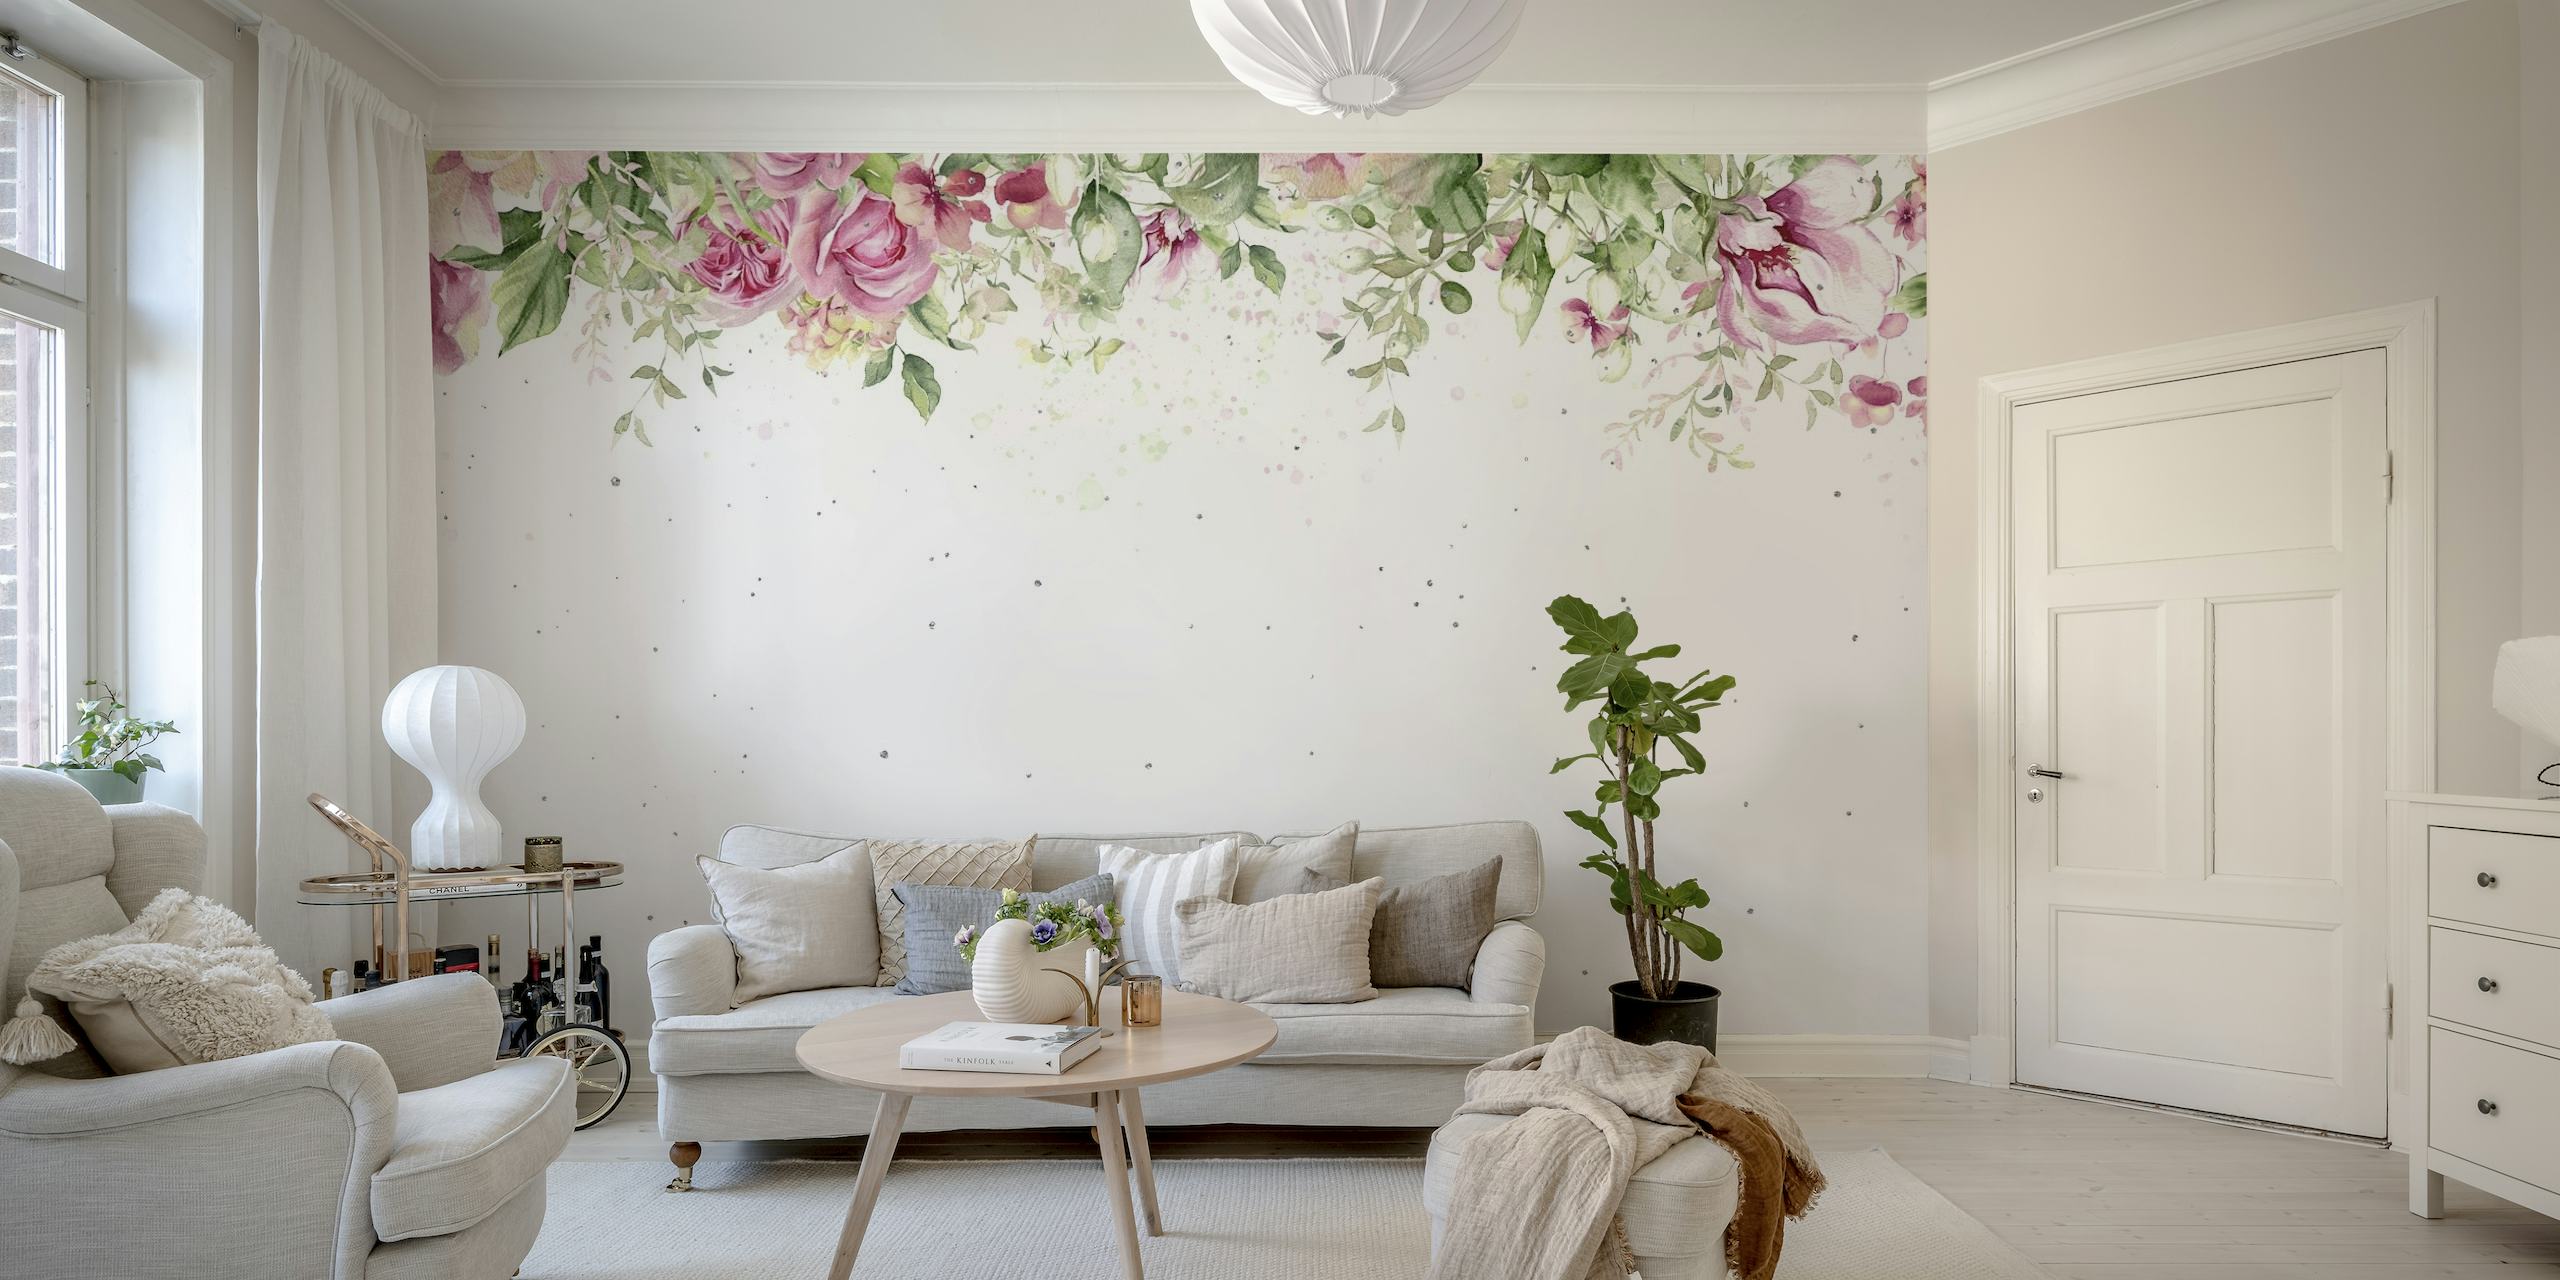 Elegantes rosas acuarelas y vegetación que crean un tranquilo borde superior en un mural de pared